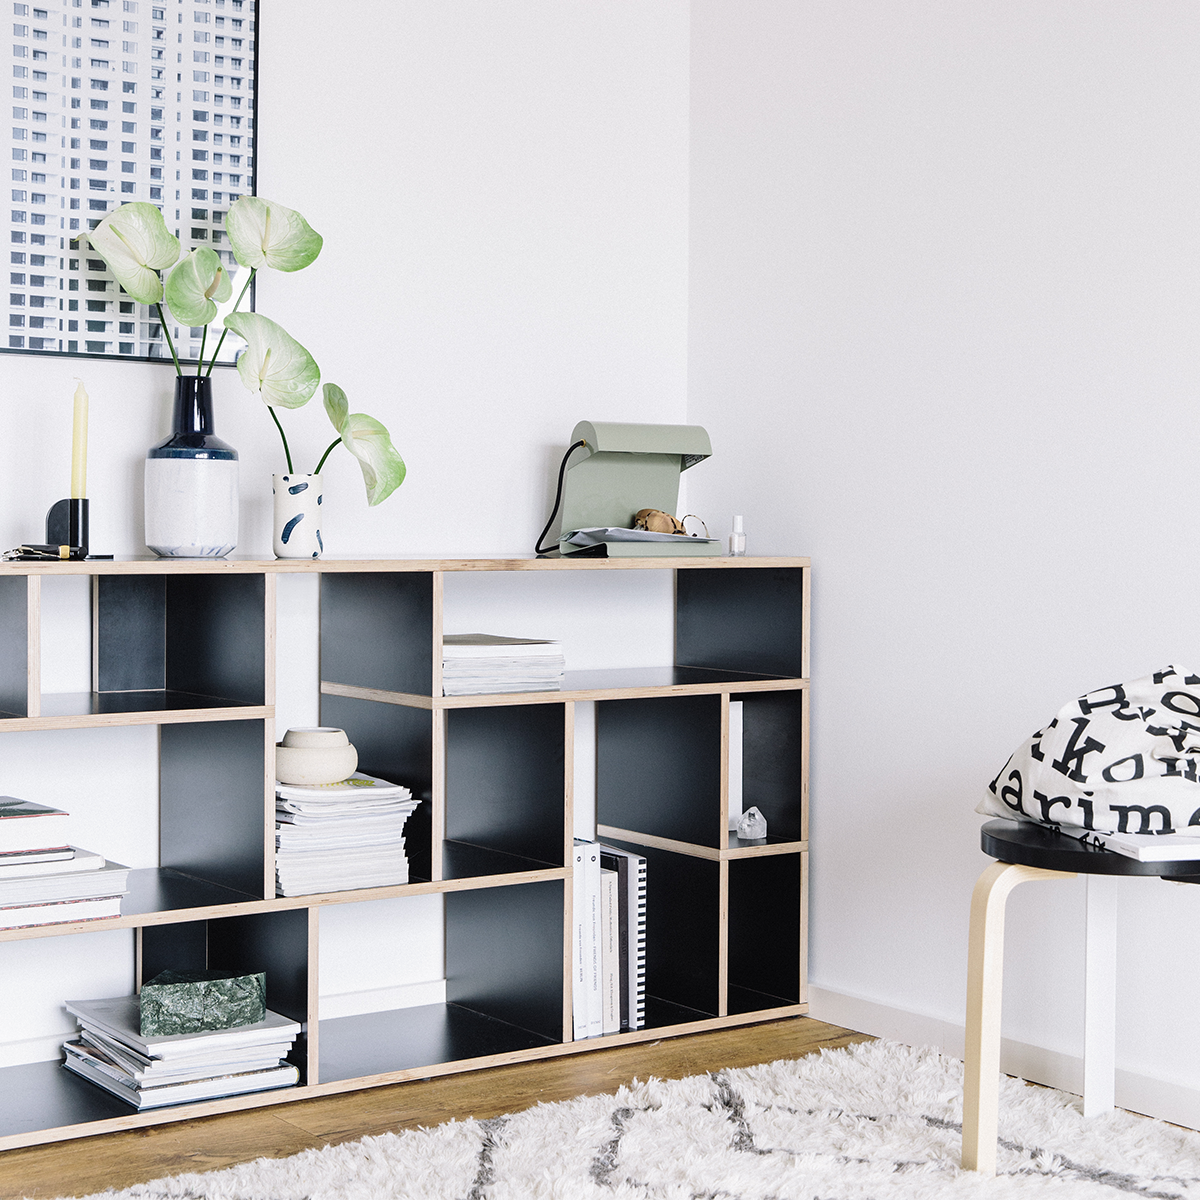 Das perfekt angepasste Regal für dein Zuhause. #tylko #tylkodesign #interiordesign #shelf #black #regal #schwarz